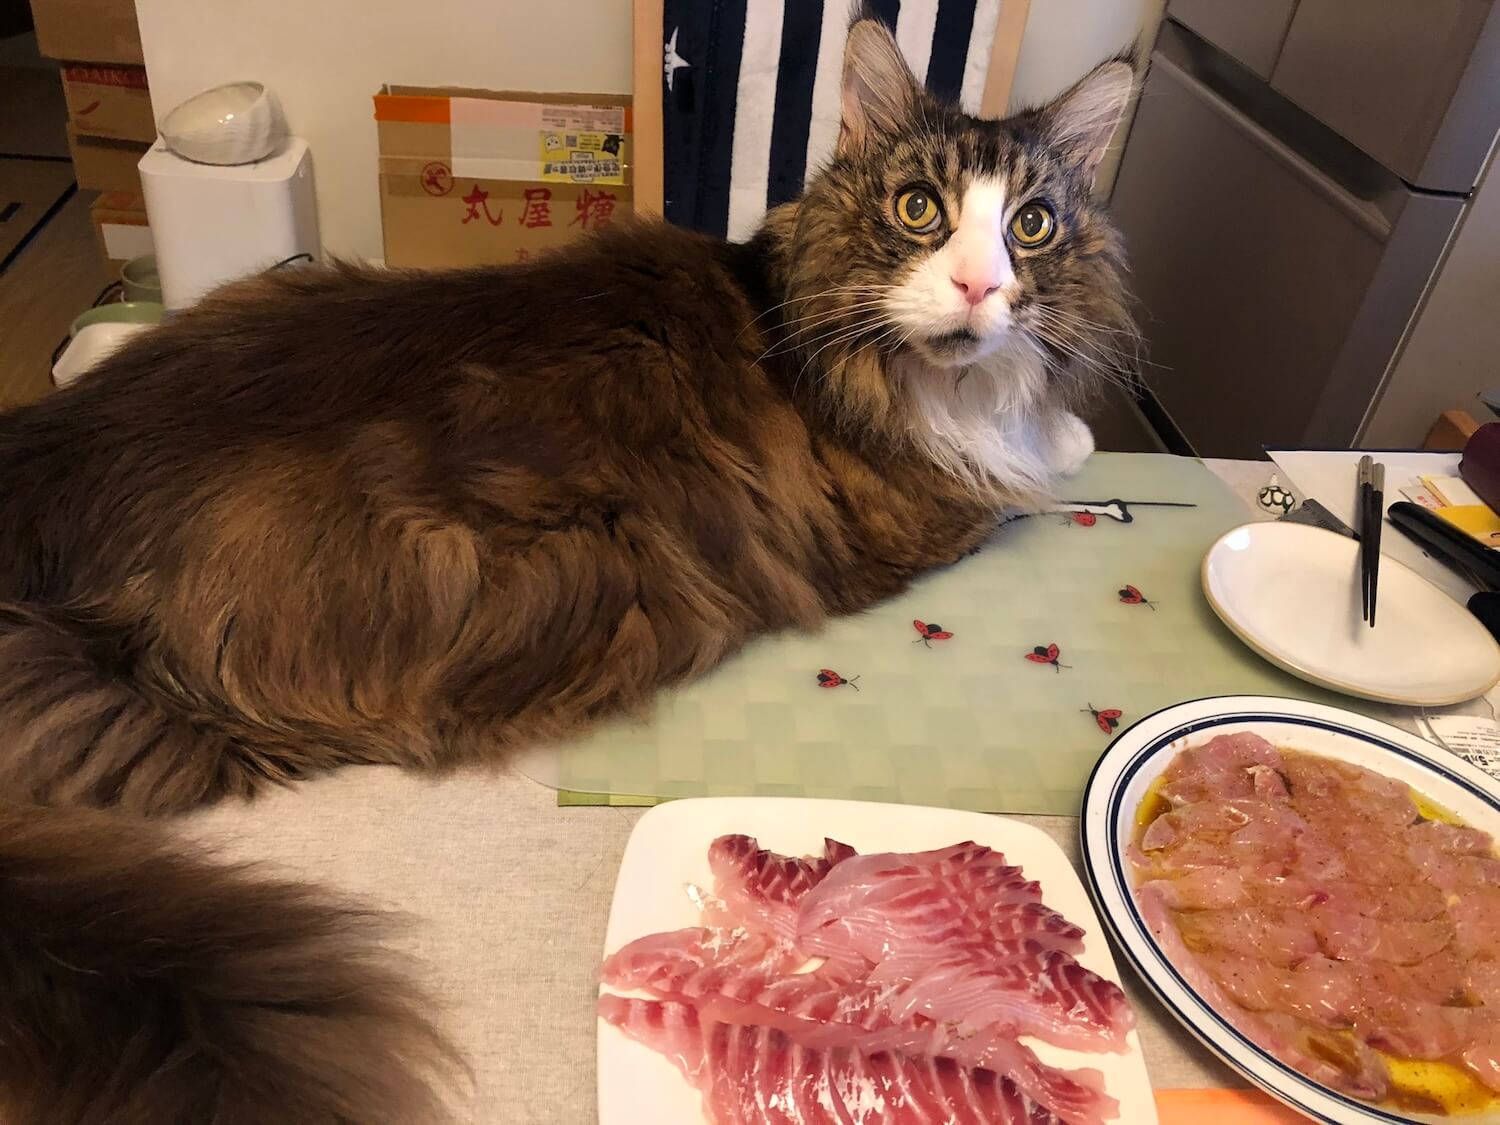 食事中のダイニングテーブルに居座る大型猫のメインクーン